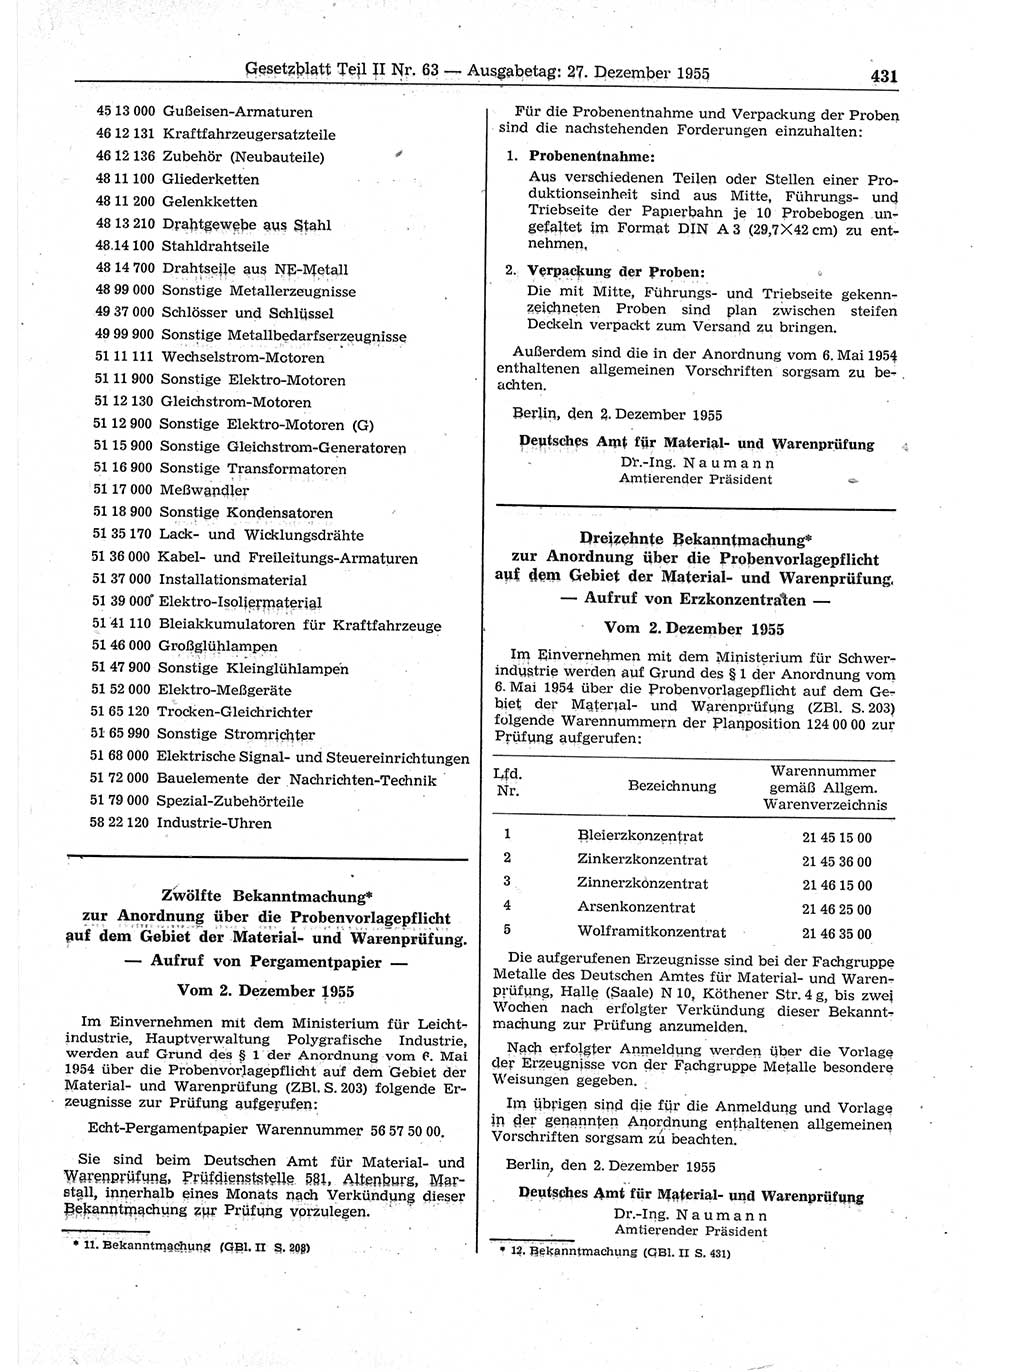 Gesetzblatt (GBl.) der Deutschen Demokratischen Republik (DDR) Teil ⅠⅠ 1955, Seite 431 (GBl. DDR ⅠⅠ 1955, S. 431)